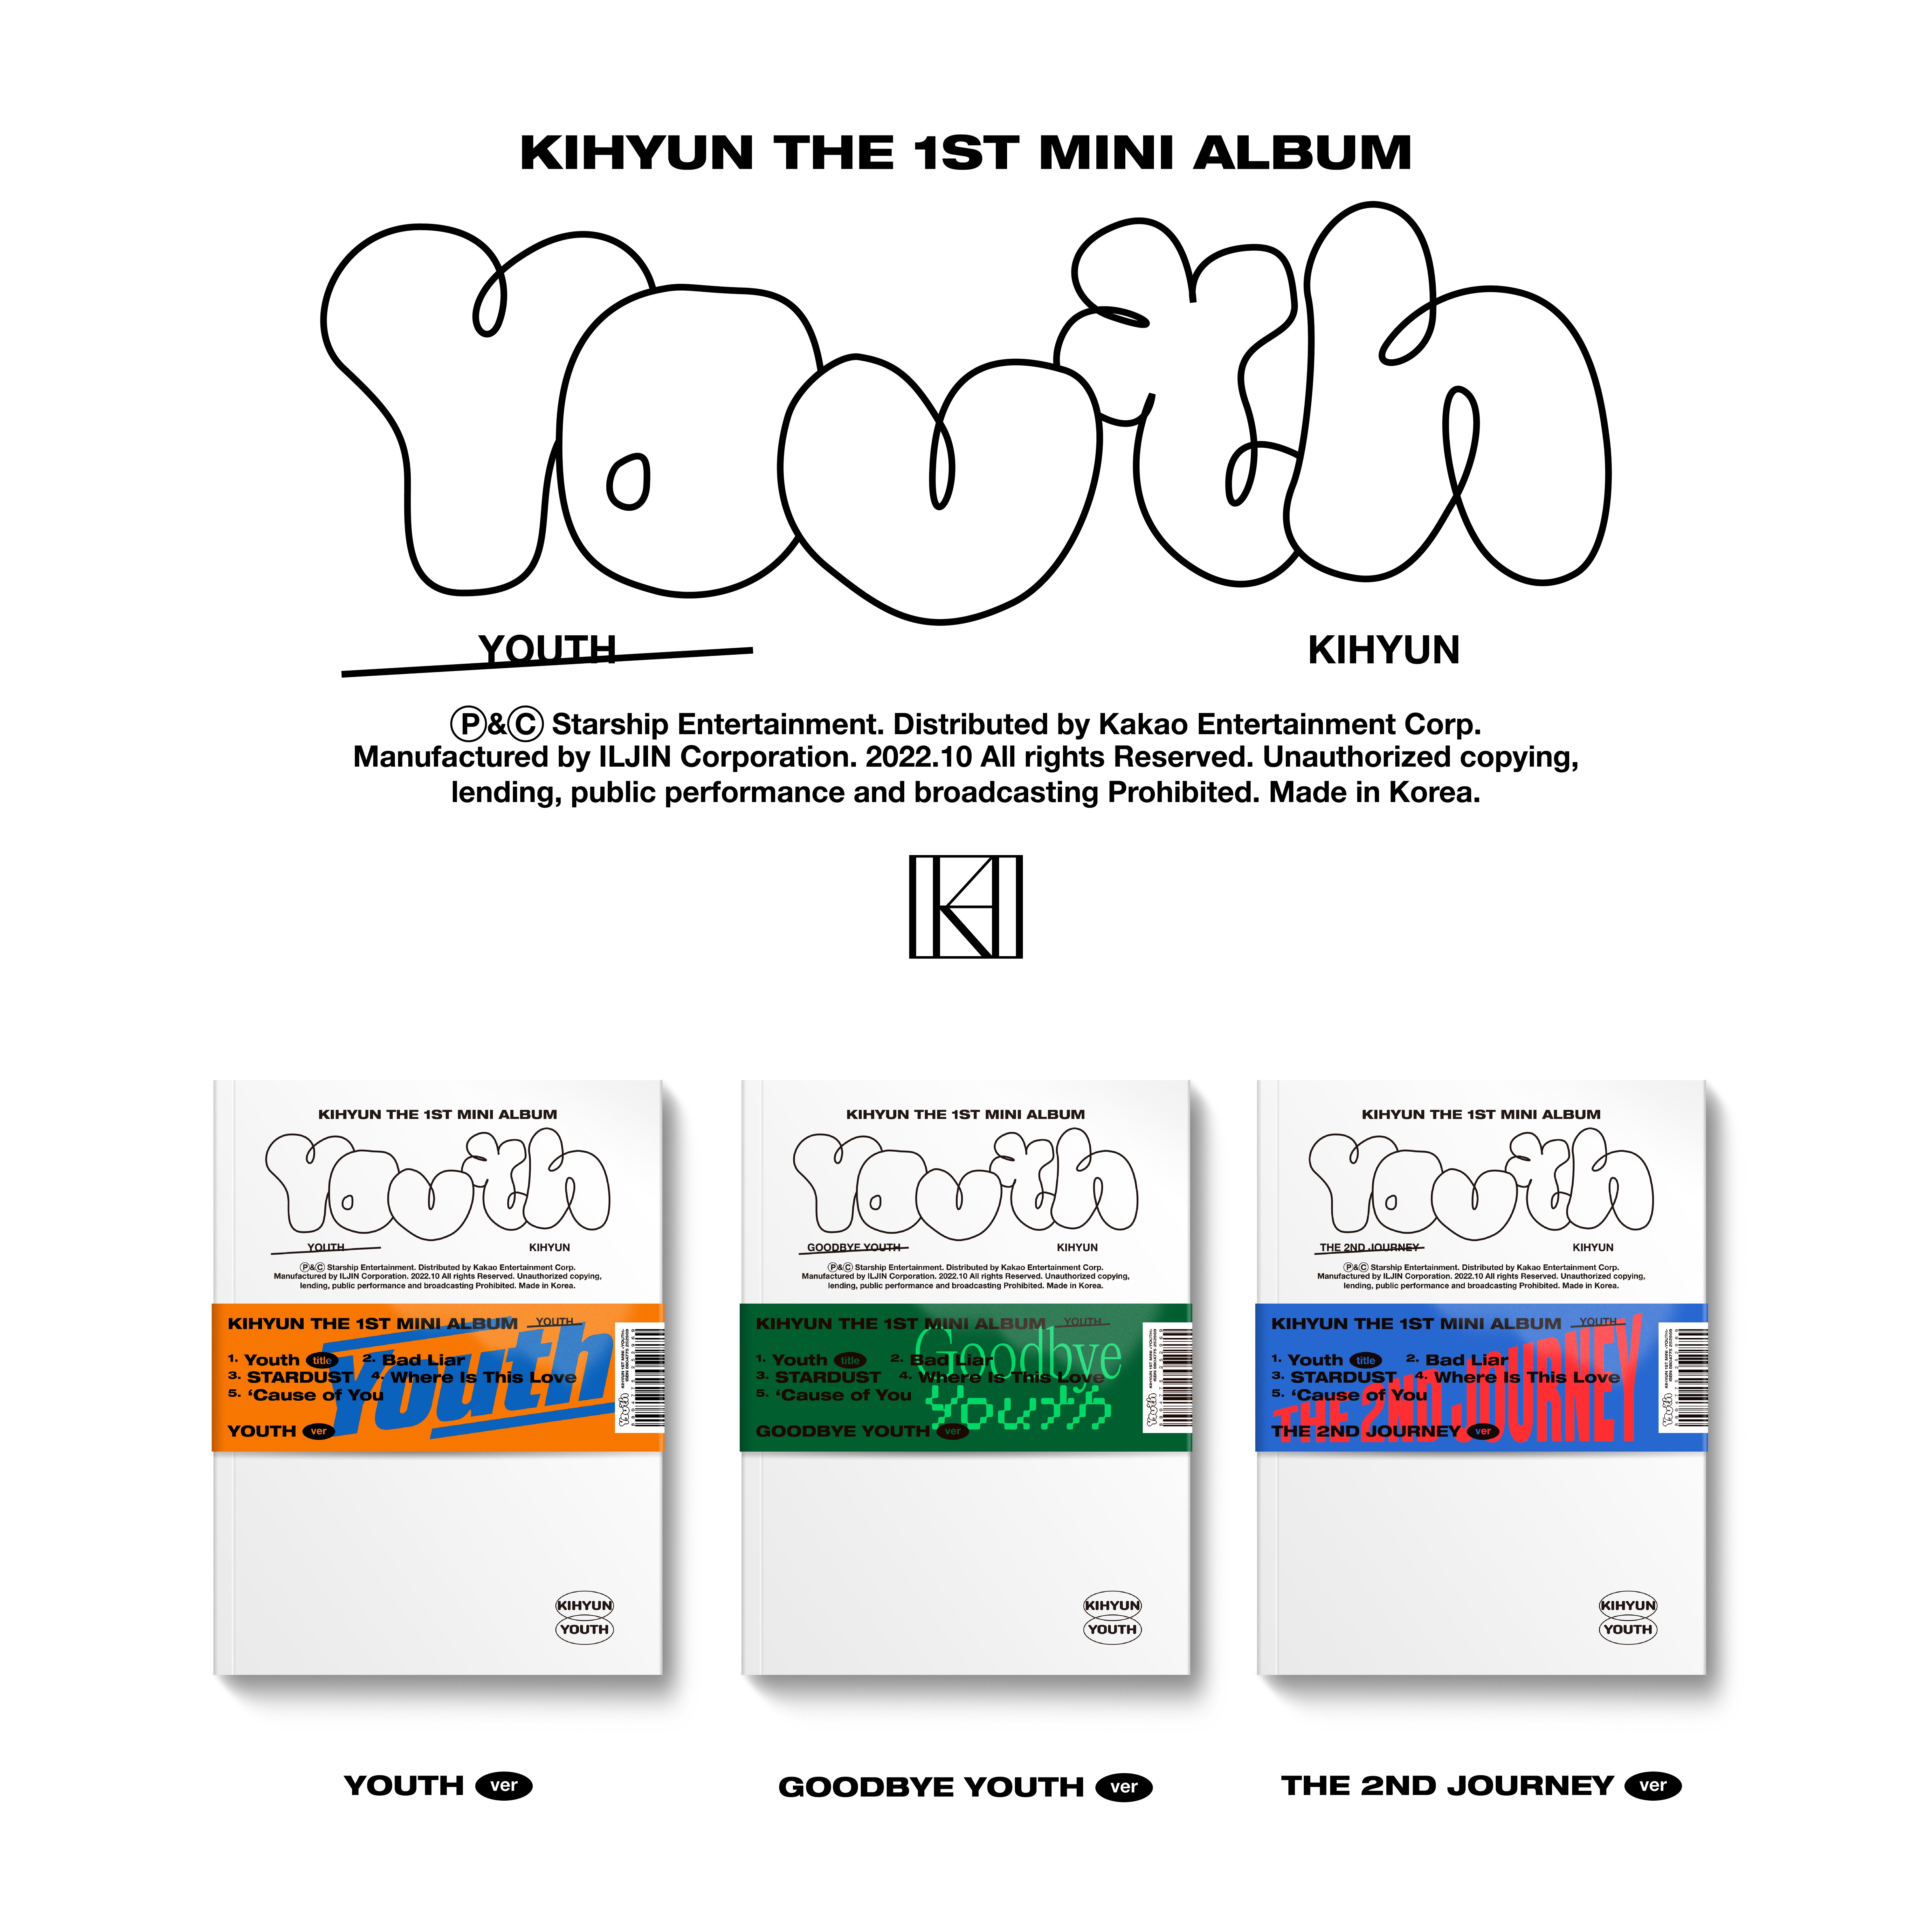 [全款 裸专][2nd] [线下签售活动] Kihyun - 迷你专辑 1辑 [YOUTH] (随机版本)_KiYoo_刘基贤中文首站